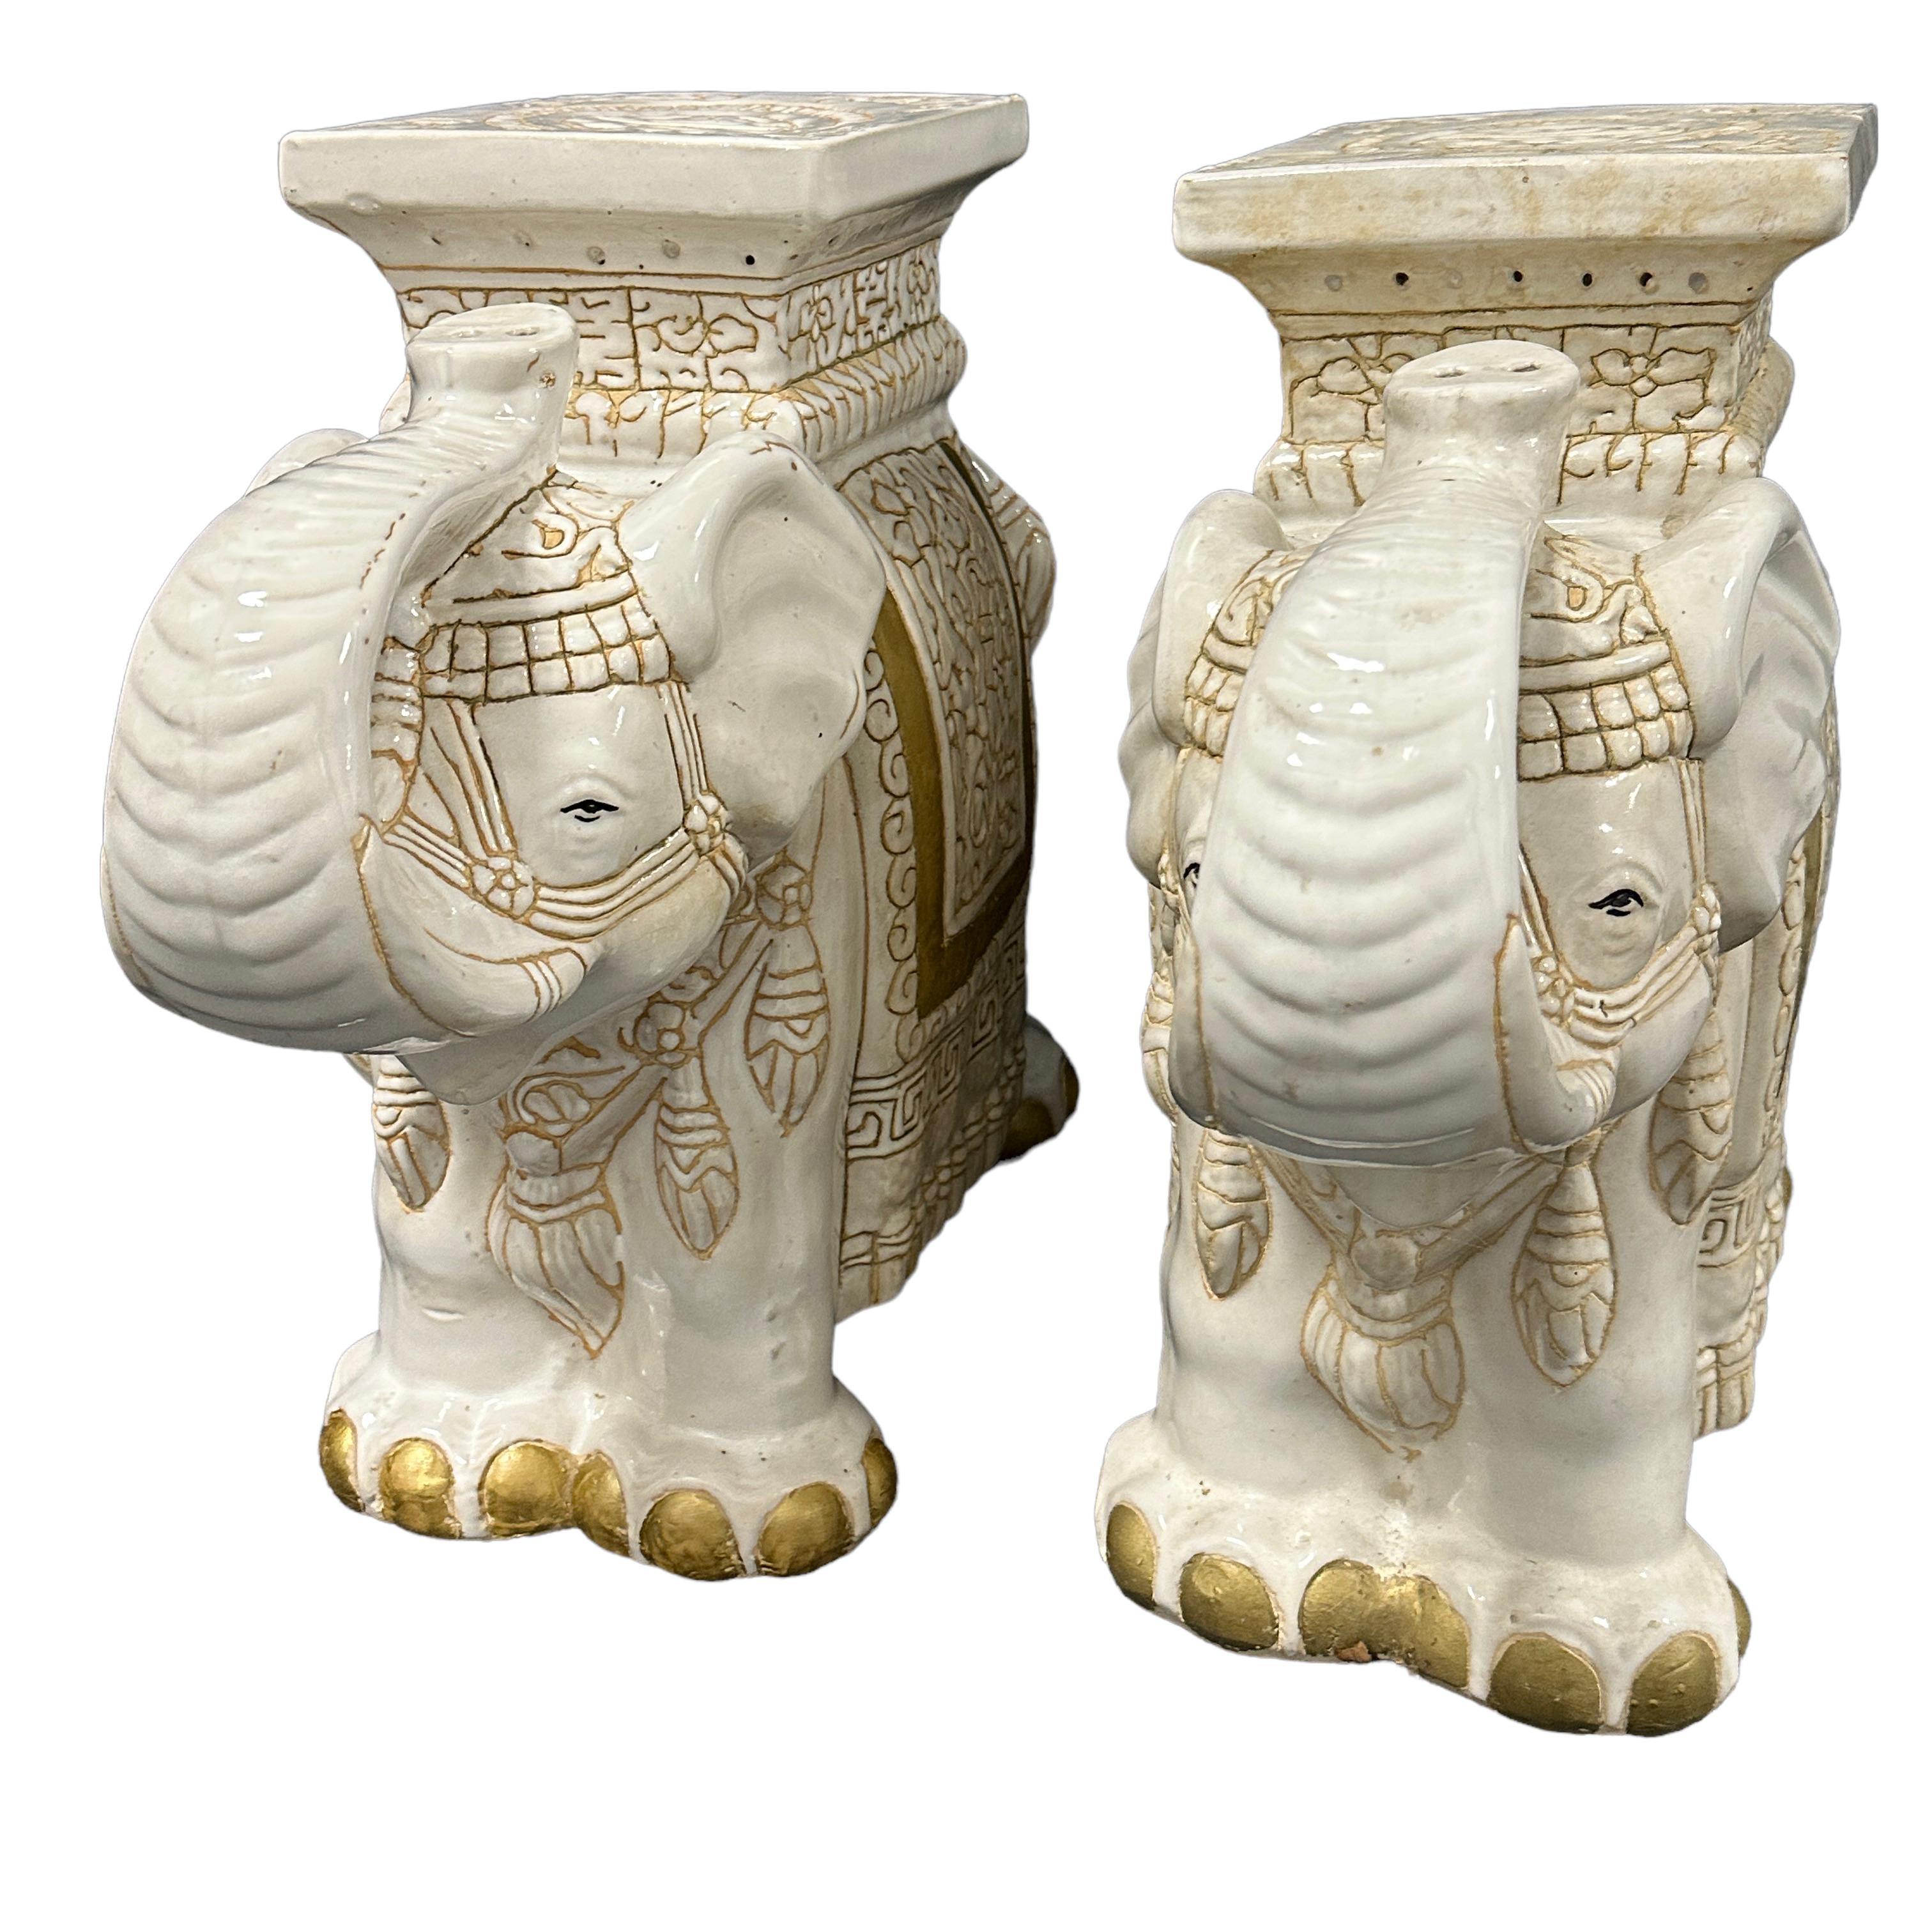 Paar glasierte Keramik Elefant Garten Hocker, Blumentopf Sitz oder Beistelltisch Mitte des 20. Jahrhunderts. Handgefertigt aus Keramik. Eine schöne Ergänzung für Ihr Haus, Ihre Terrasse oder Ihren Garten. Eine schöne Ergänzung für jedes Zimmer, jede